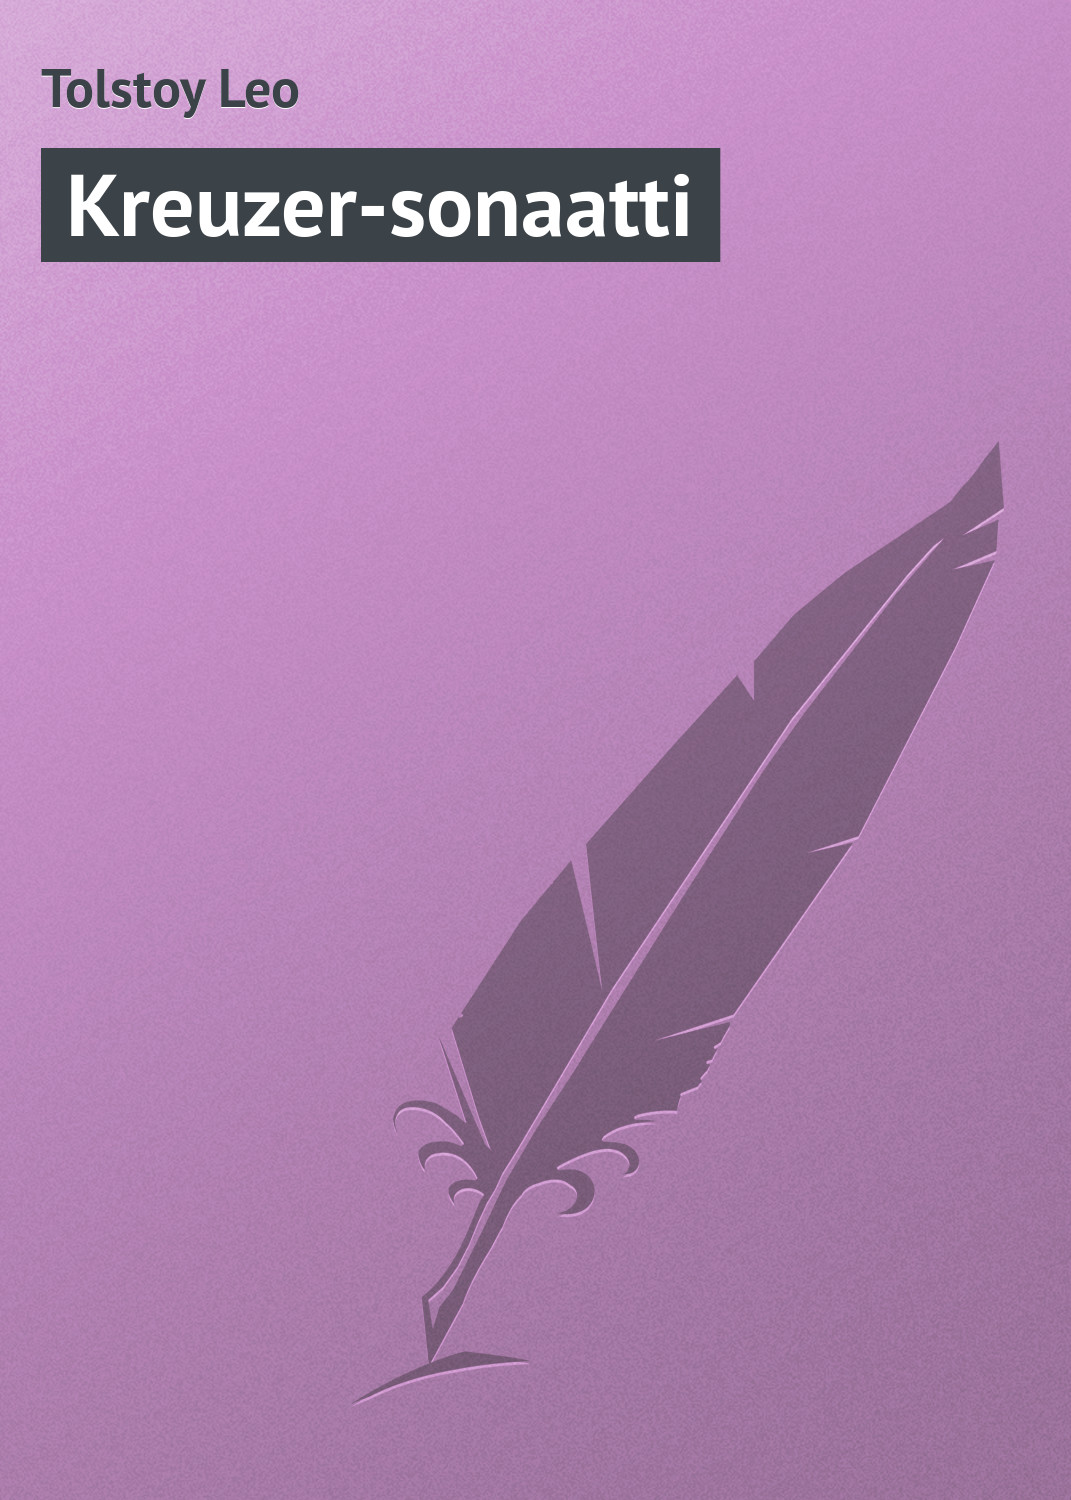 Книга Kreuzer-sonaatti из серии , созданная Leo Tolstoy, может относится к жанру Русская классика. Стоимость электронной книги Kreuzer-sonaatti с идентификатором 23168731 составляет 5.99 руб.